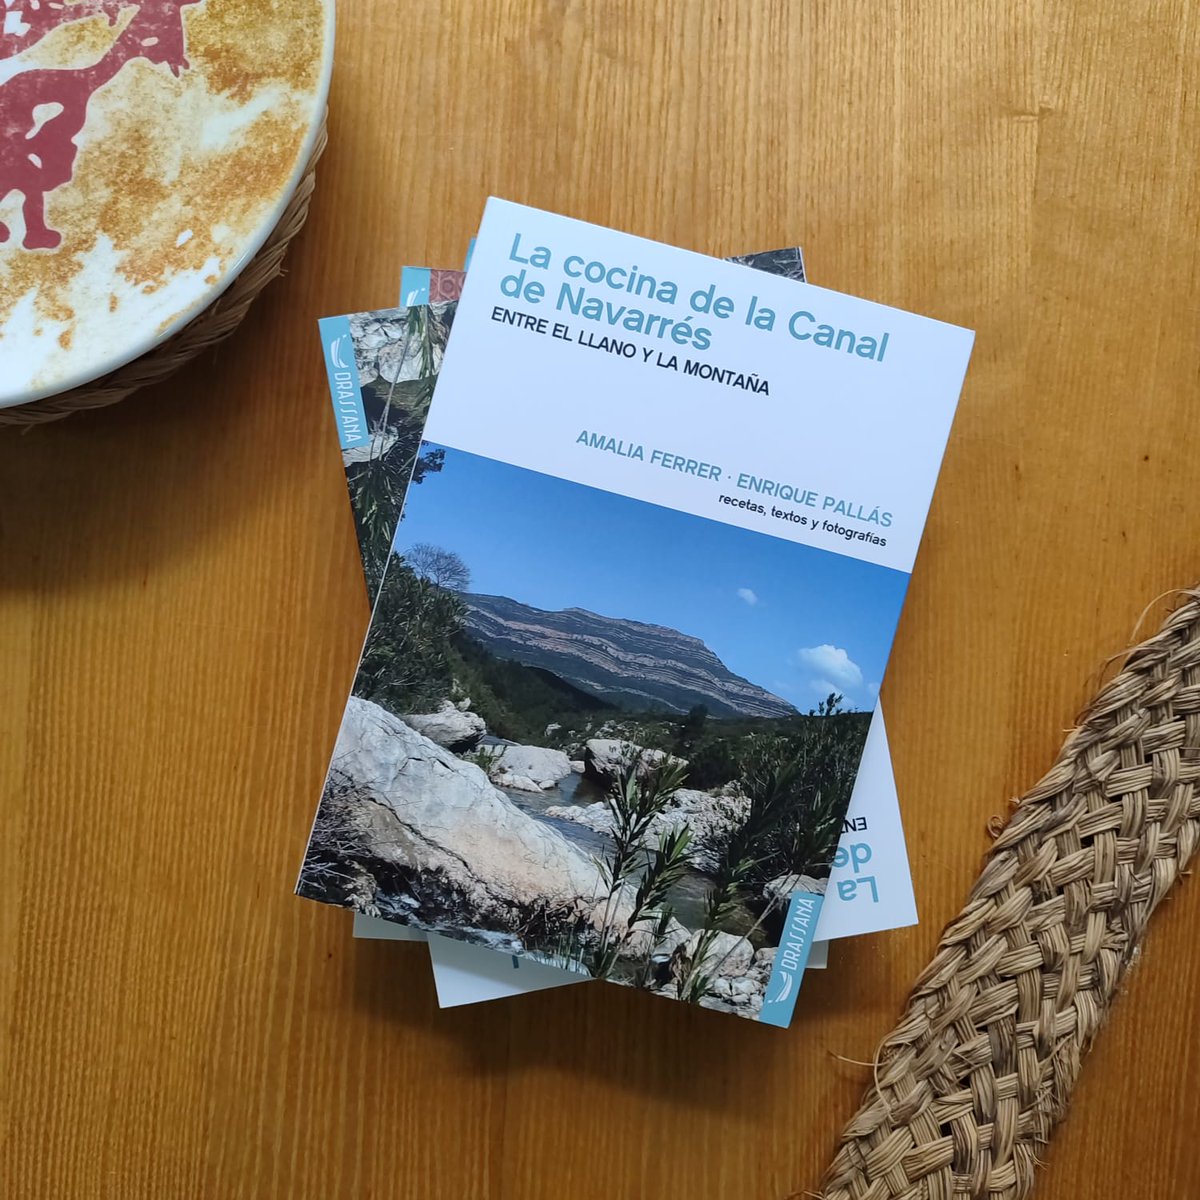 Os esperamos a todos mañana sábado 2 de diciembre a las 12:00h en el Ecomuseo de Bicorp para la presentación del libro 'La cocina de la Canal de Navarrés', un libro que recoge las recetas tradicionales de la comarca.

#presentación #librococina #recetastradicionales